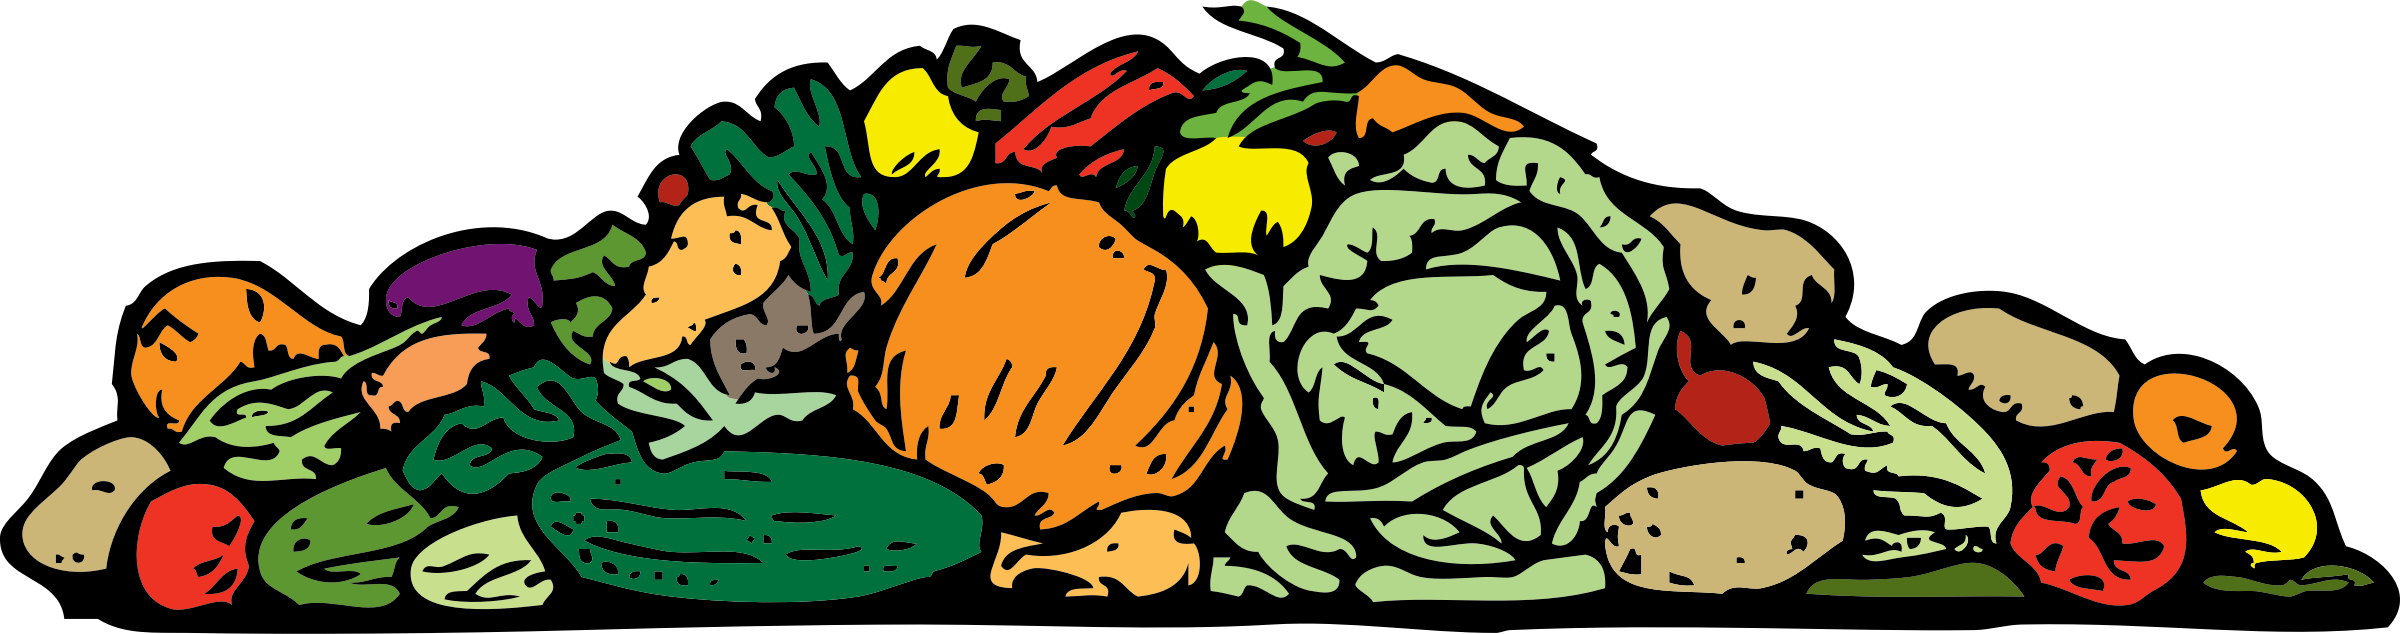 Colorful Assorted Vegetables Illustration PNG image